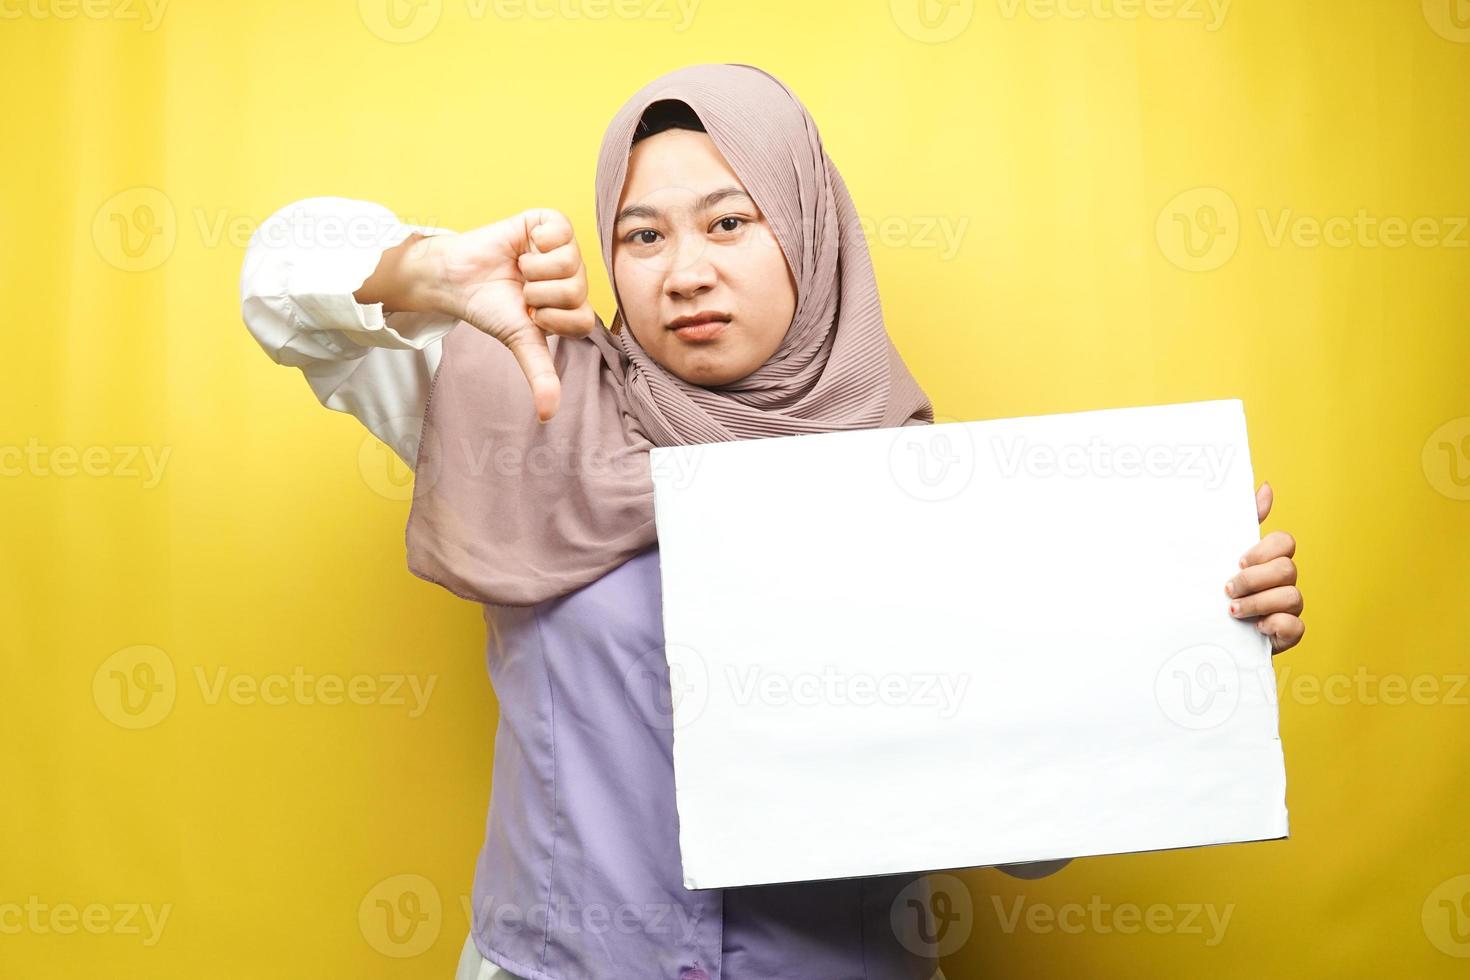 ganska ung muslimsk kvinna ogillar, hand som håller en tom tom banderoll, plakat, vit tavla, tom skylttavla, vit reklamtavla, presentera något i kopieringsutrymmet, marknadsföring foto